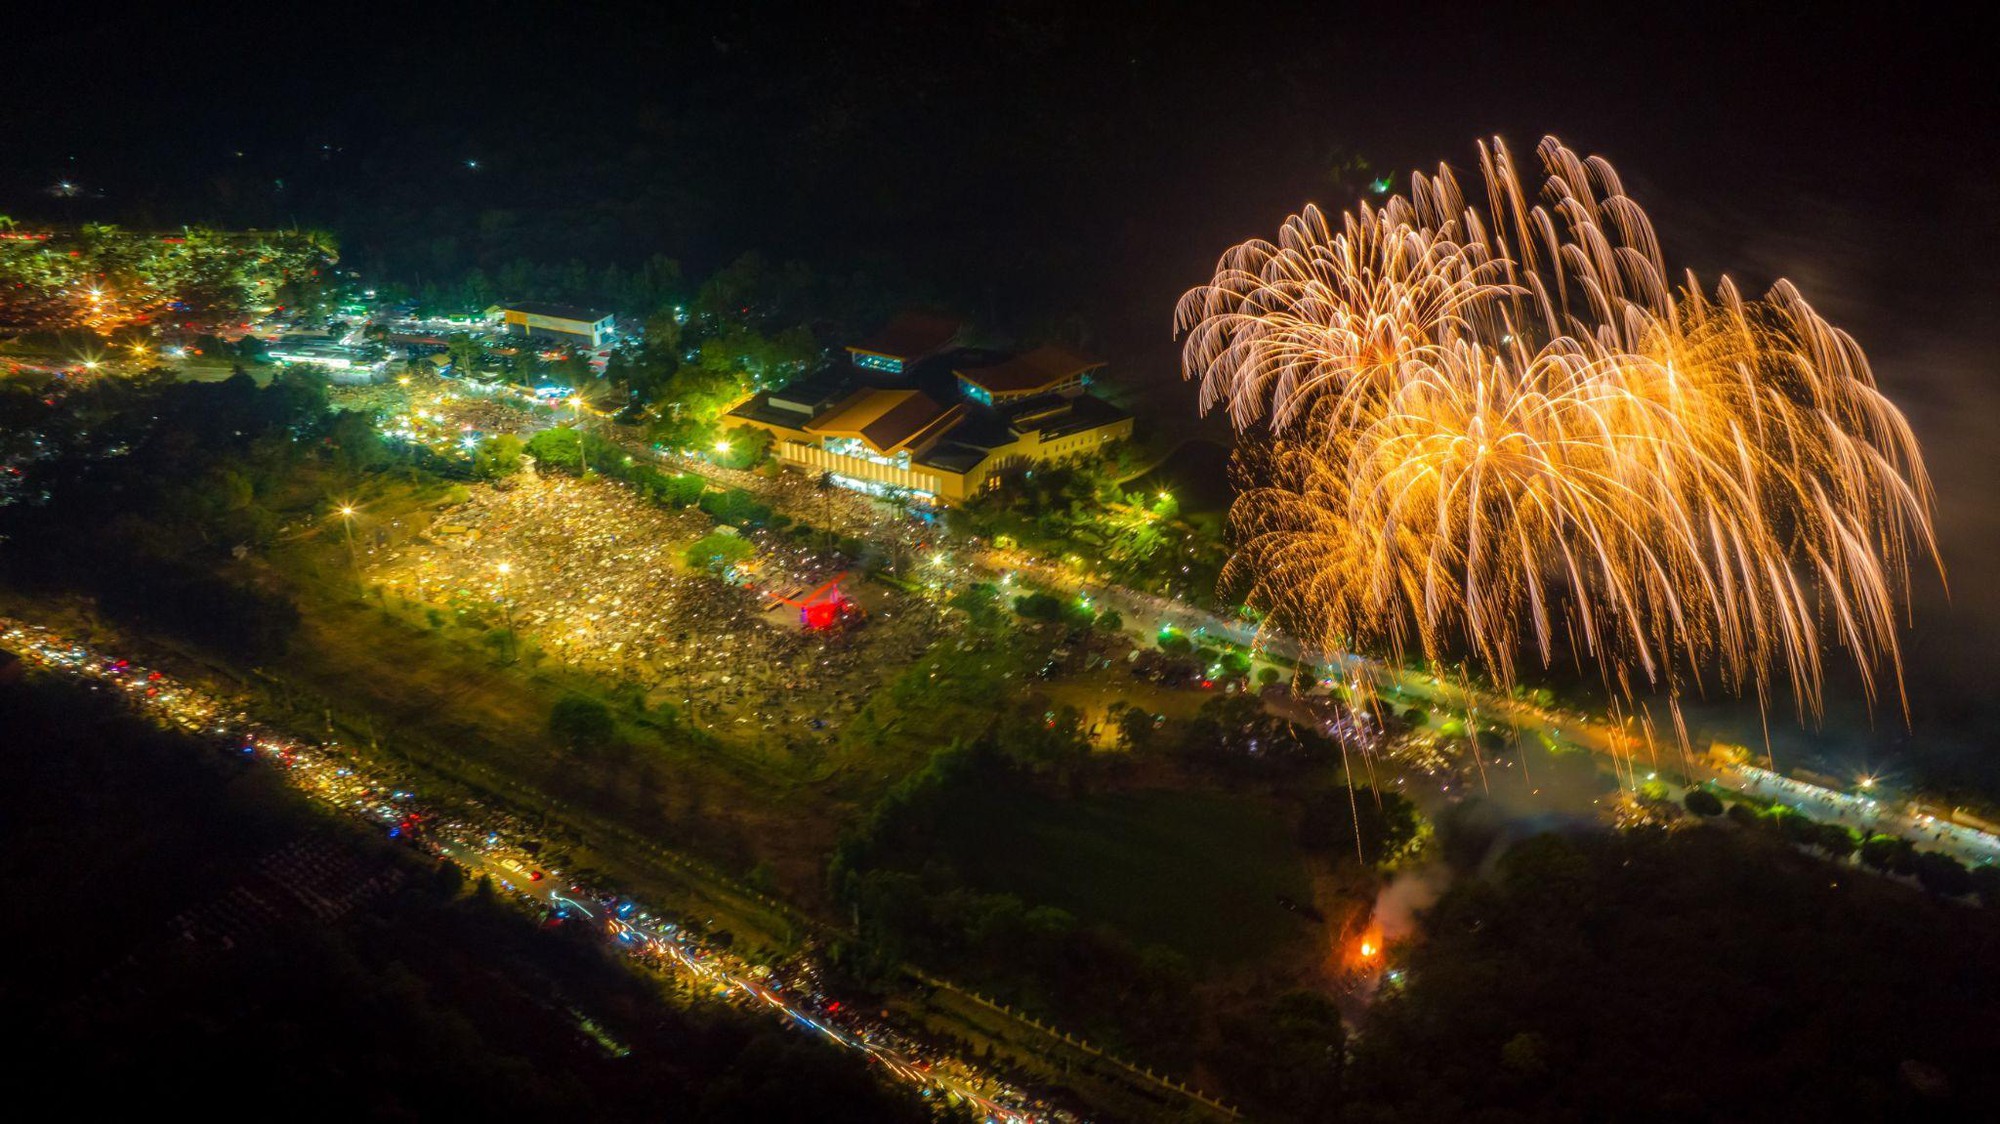 Hàng ngàn người cùng đếm ngược đón năm mới trong pháo hoa rực rỡ tại Tây Ninh - Ảnh 3.